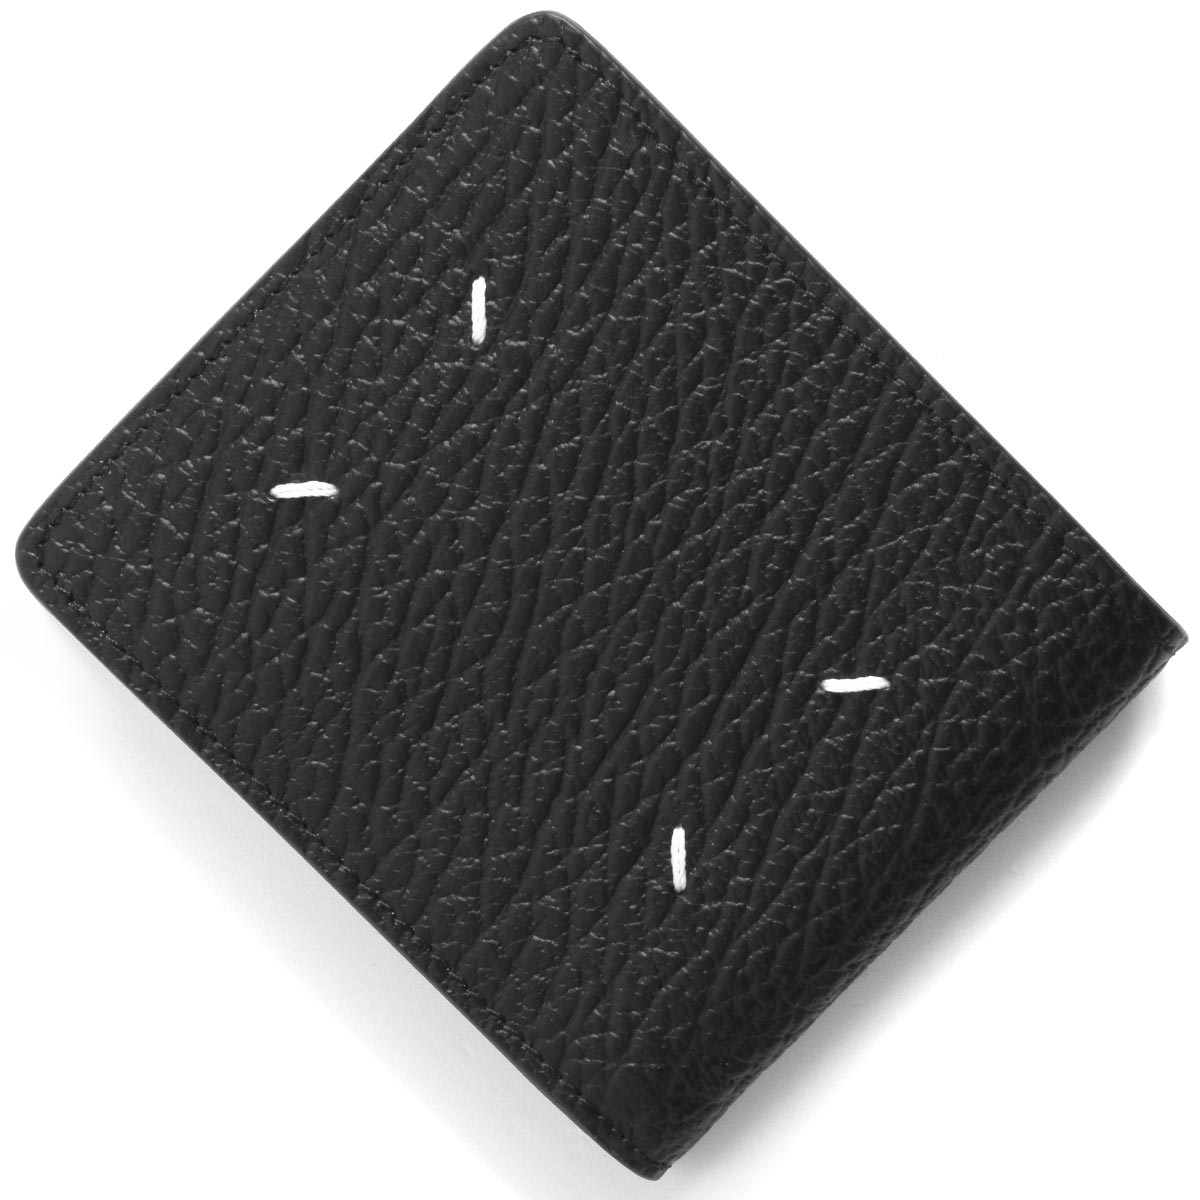 新品 メゾン マルジェラ Maison Margiela 3つ折り財布 4ステッチ ブラック 黒